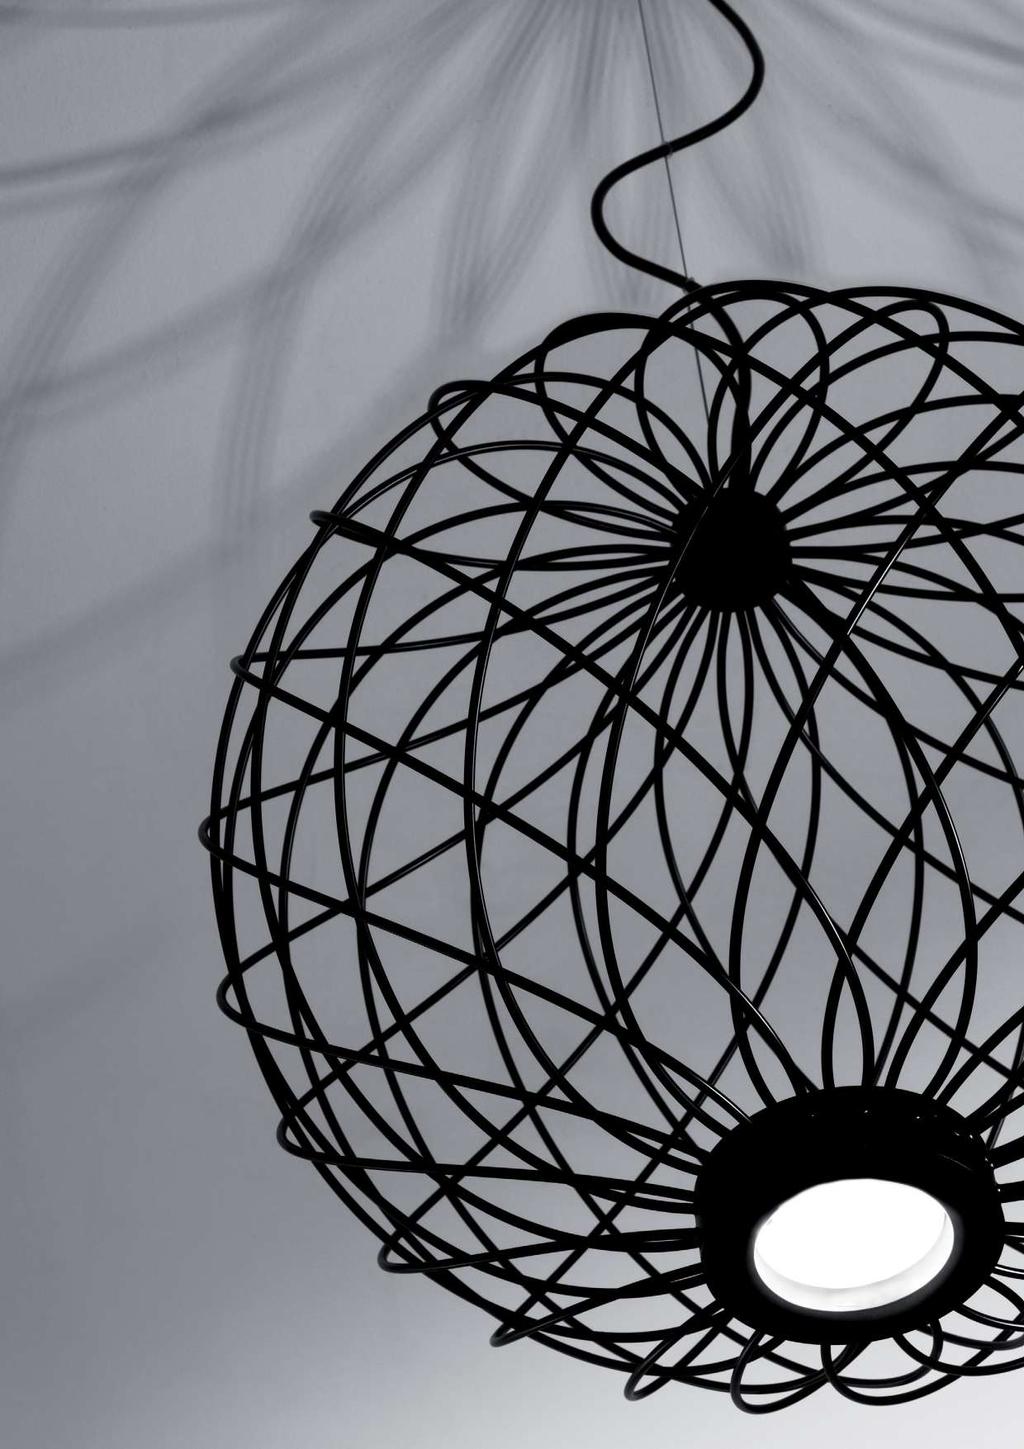 PENELOPE design Sebastiano Tosi 2017 Collezione di lampade in filo di metallo con LED integrati. Materiali: metallo Finiture: Bianco opaco, nero opaco, bronzo chiaro, ottone.